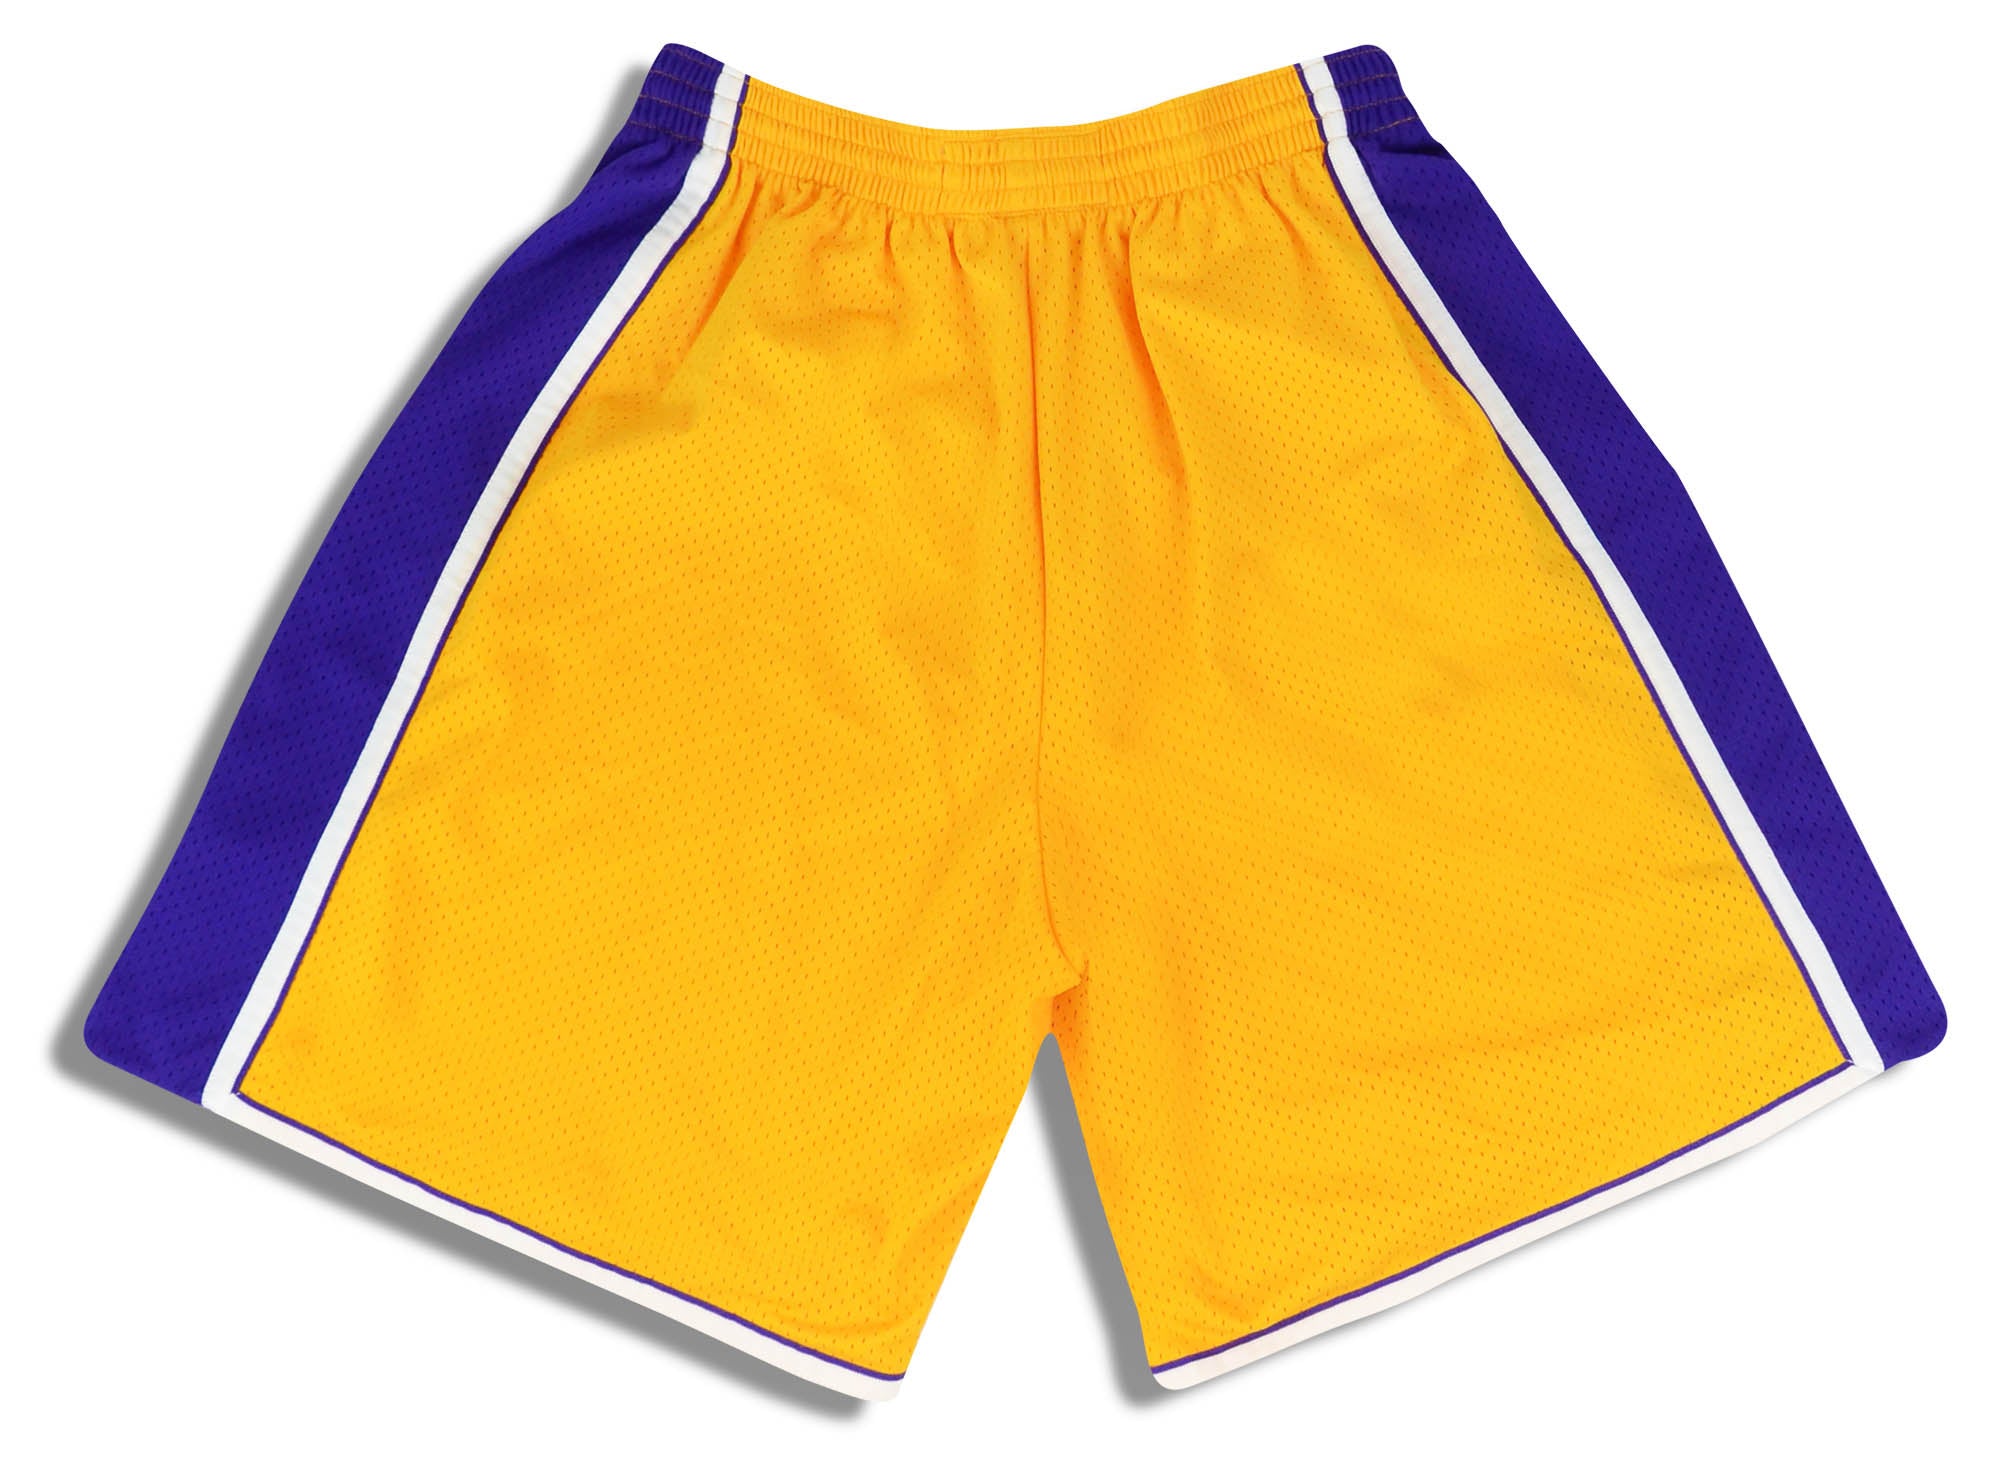 yellow laker shorts